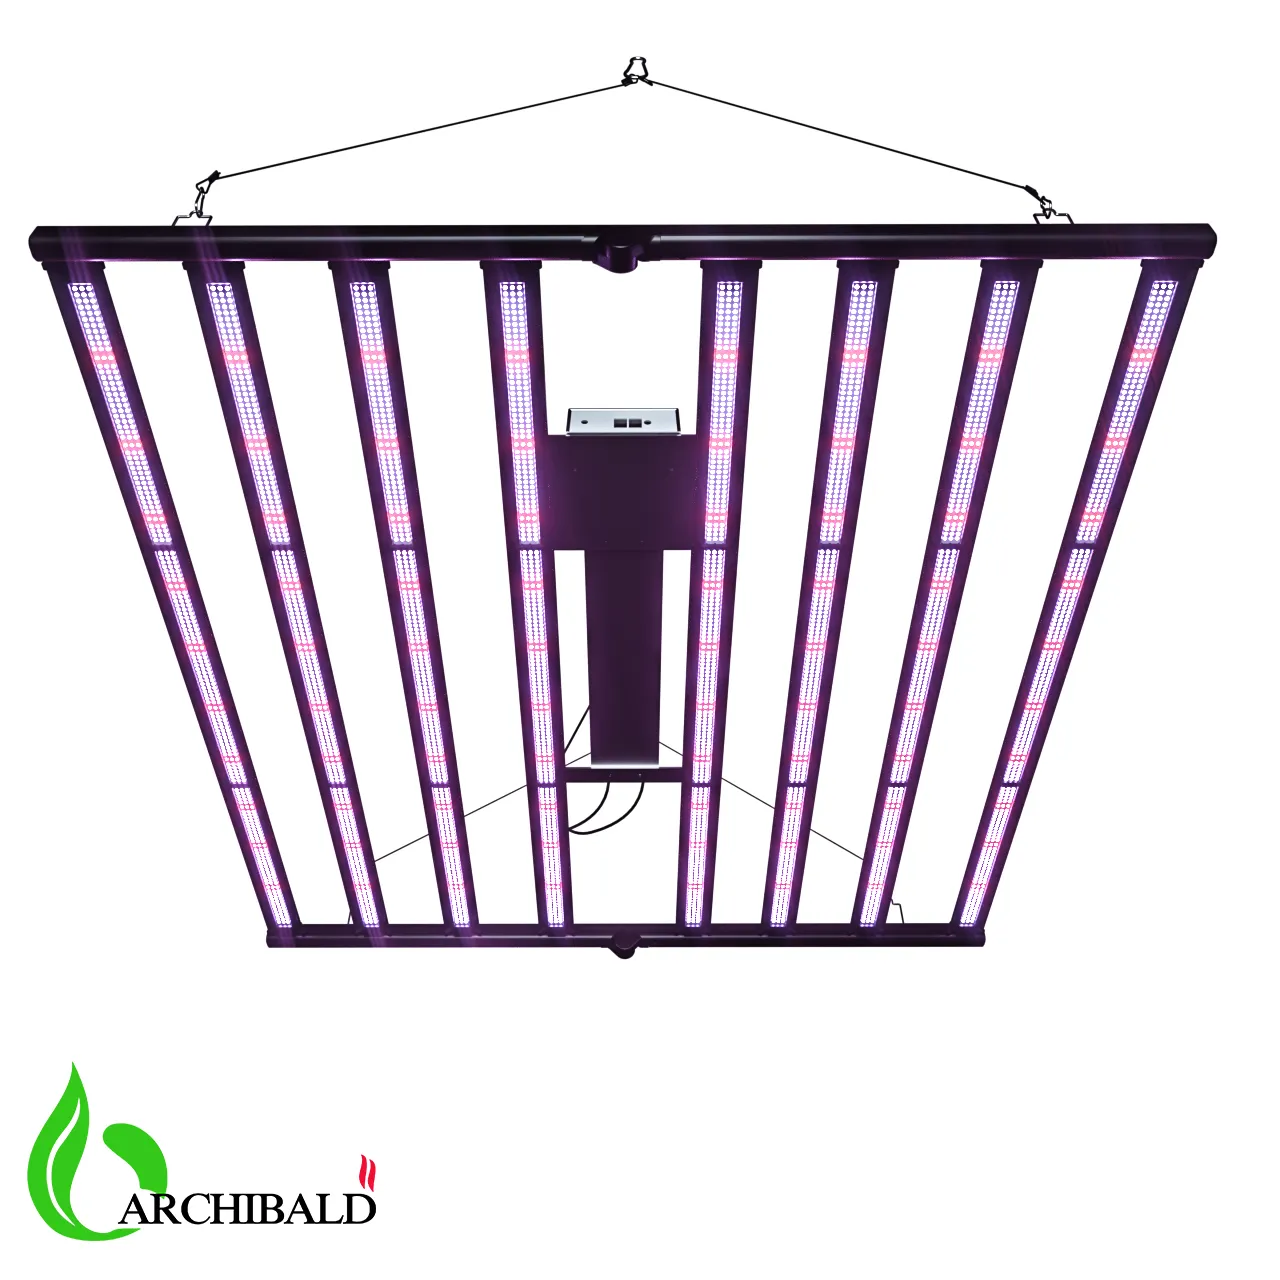 AA Archibald 2022 Lm301 Powerful Indoor Plant Grow Light Samsung Painel Led Lm301h Evo 1000W Led Grow Light Bar